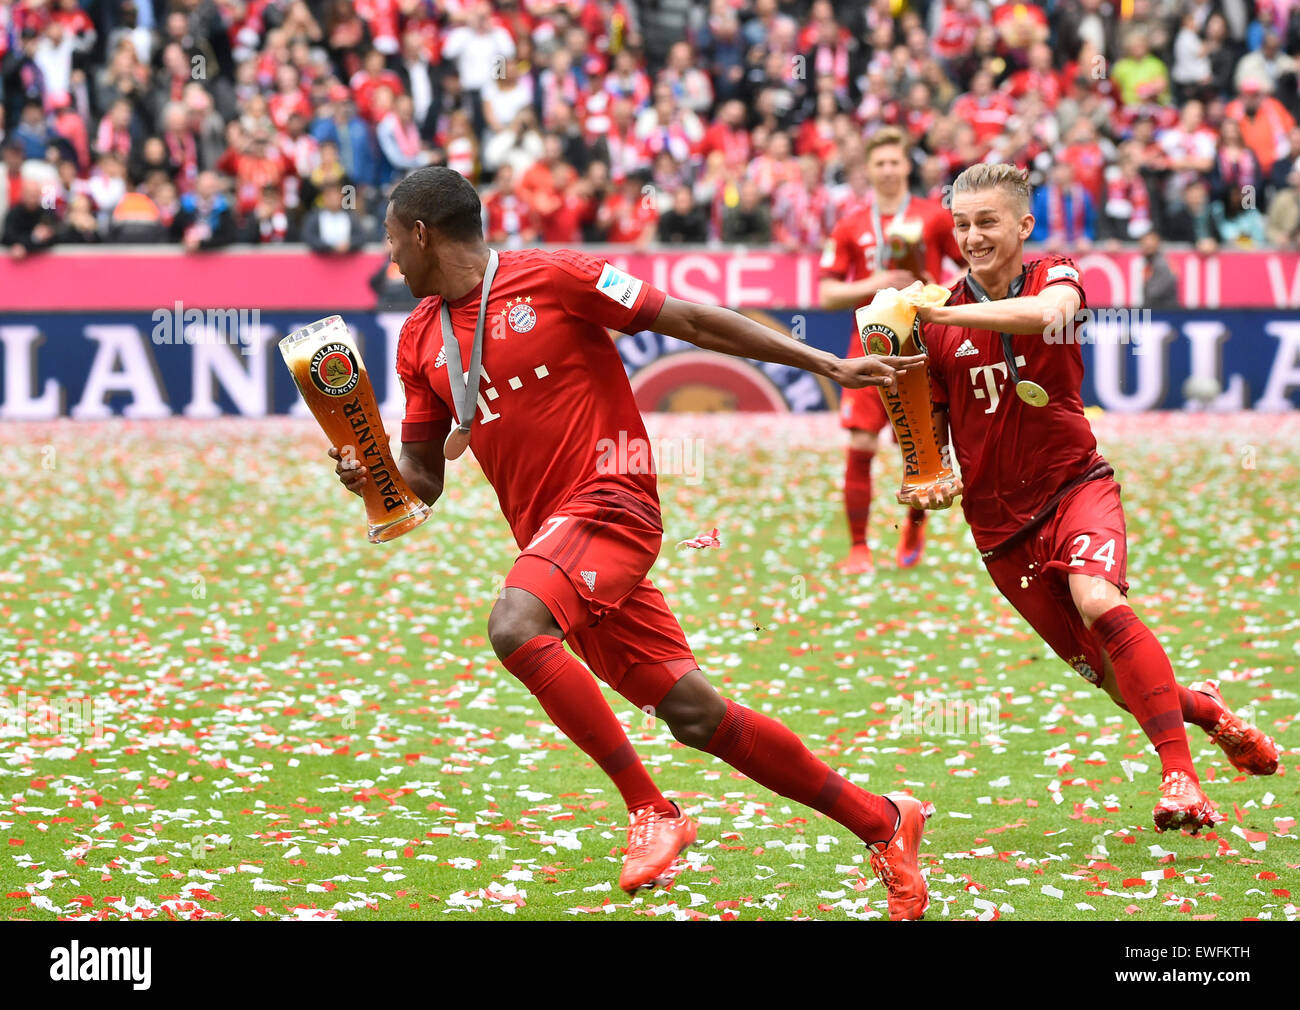 Douche de bière, Sinan Kurt contre David Alaba, championship célébration du FC Bayern, 25e championnat allemand de football Banque D'Images